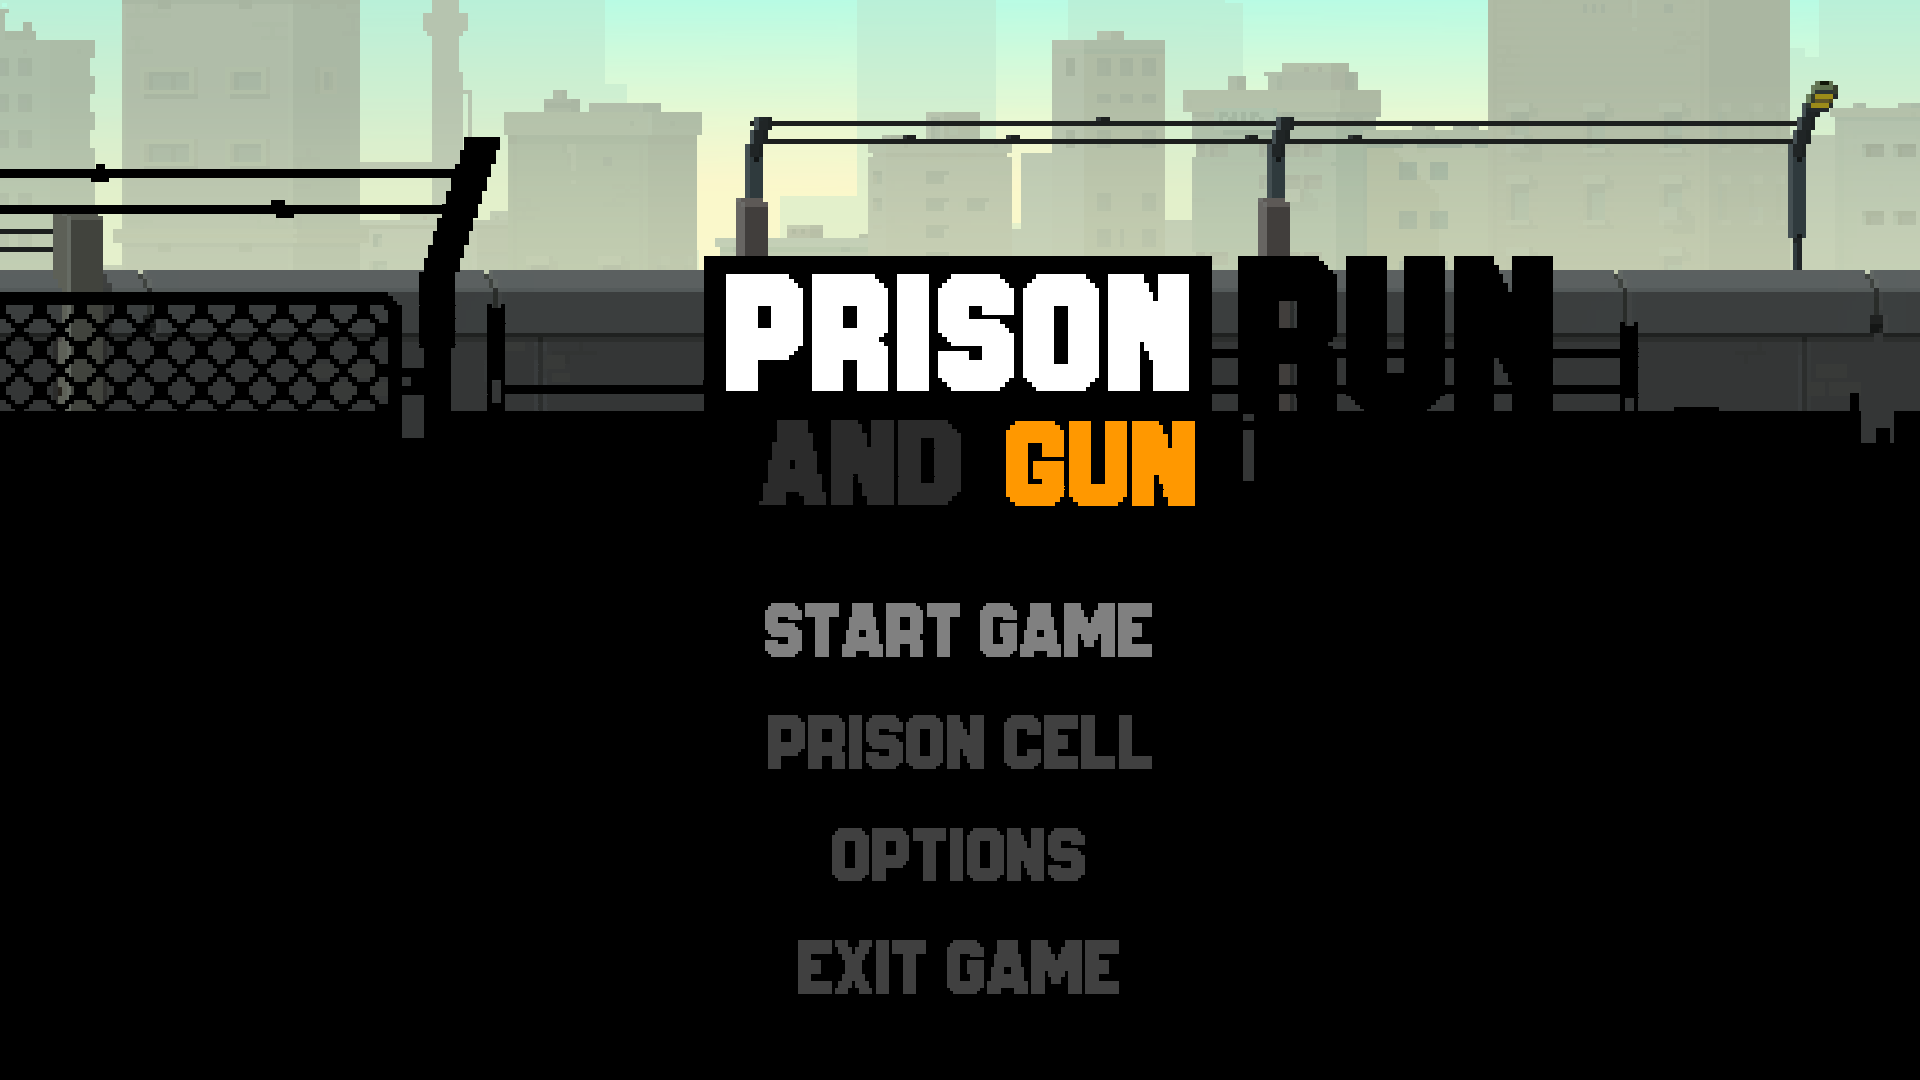 Пиксельная игра про тюрьму. Игра побег из тюрьмы пиксельная игра. Подземная тюрьма игра. Игра платформер про побег из тюрьмы.